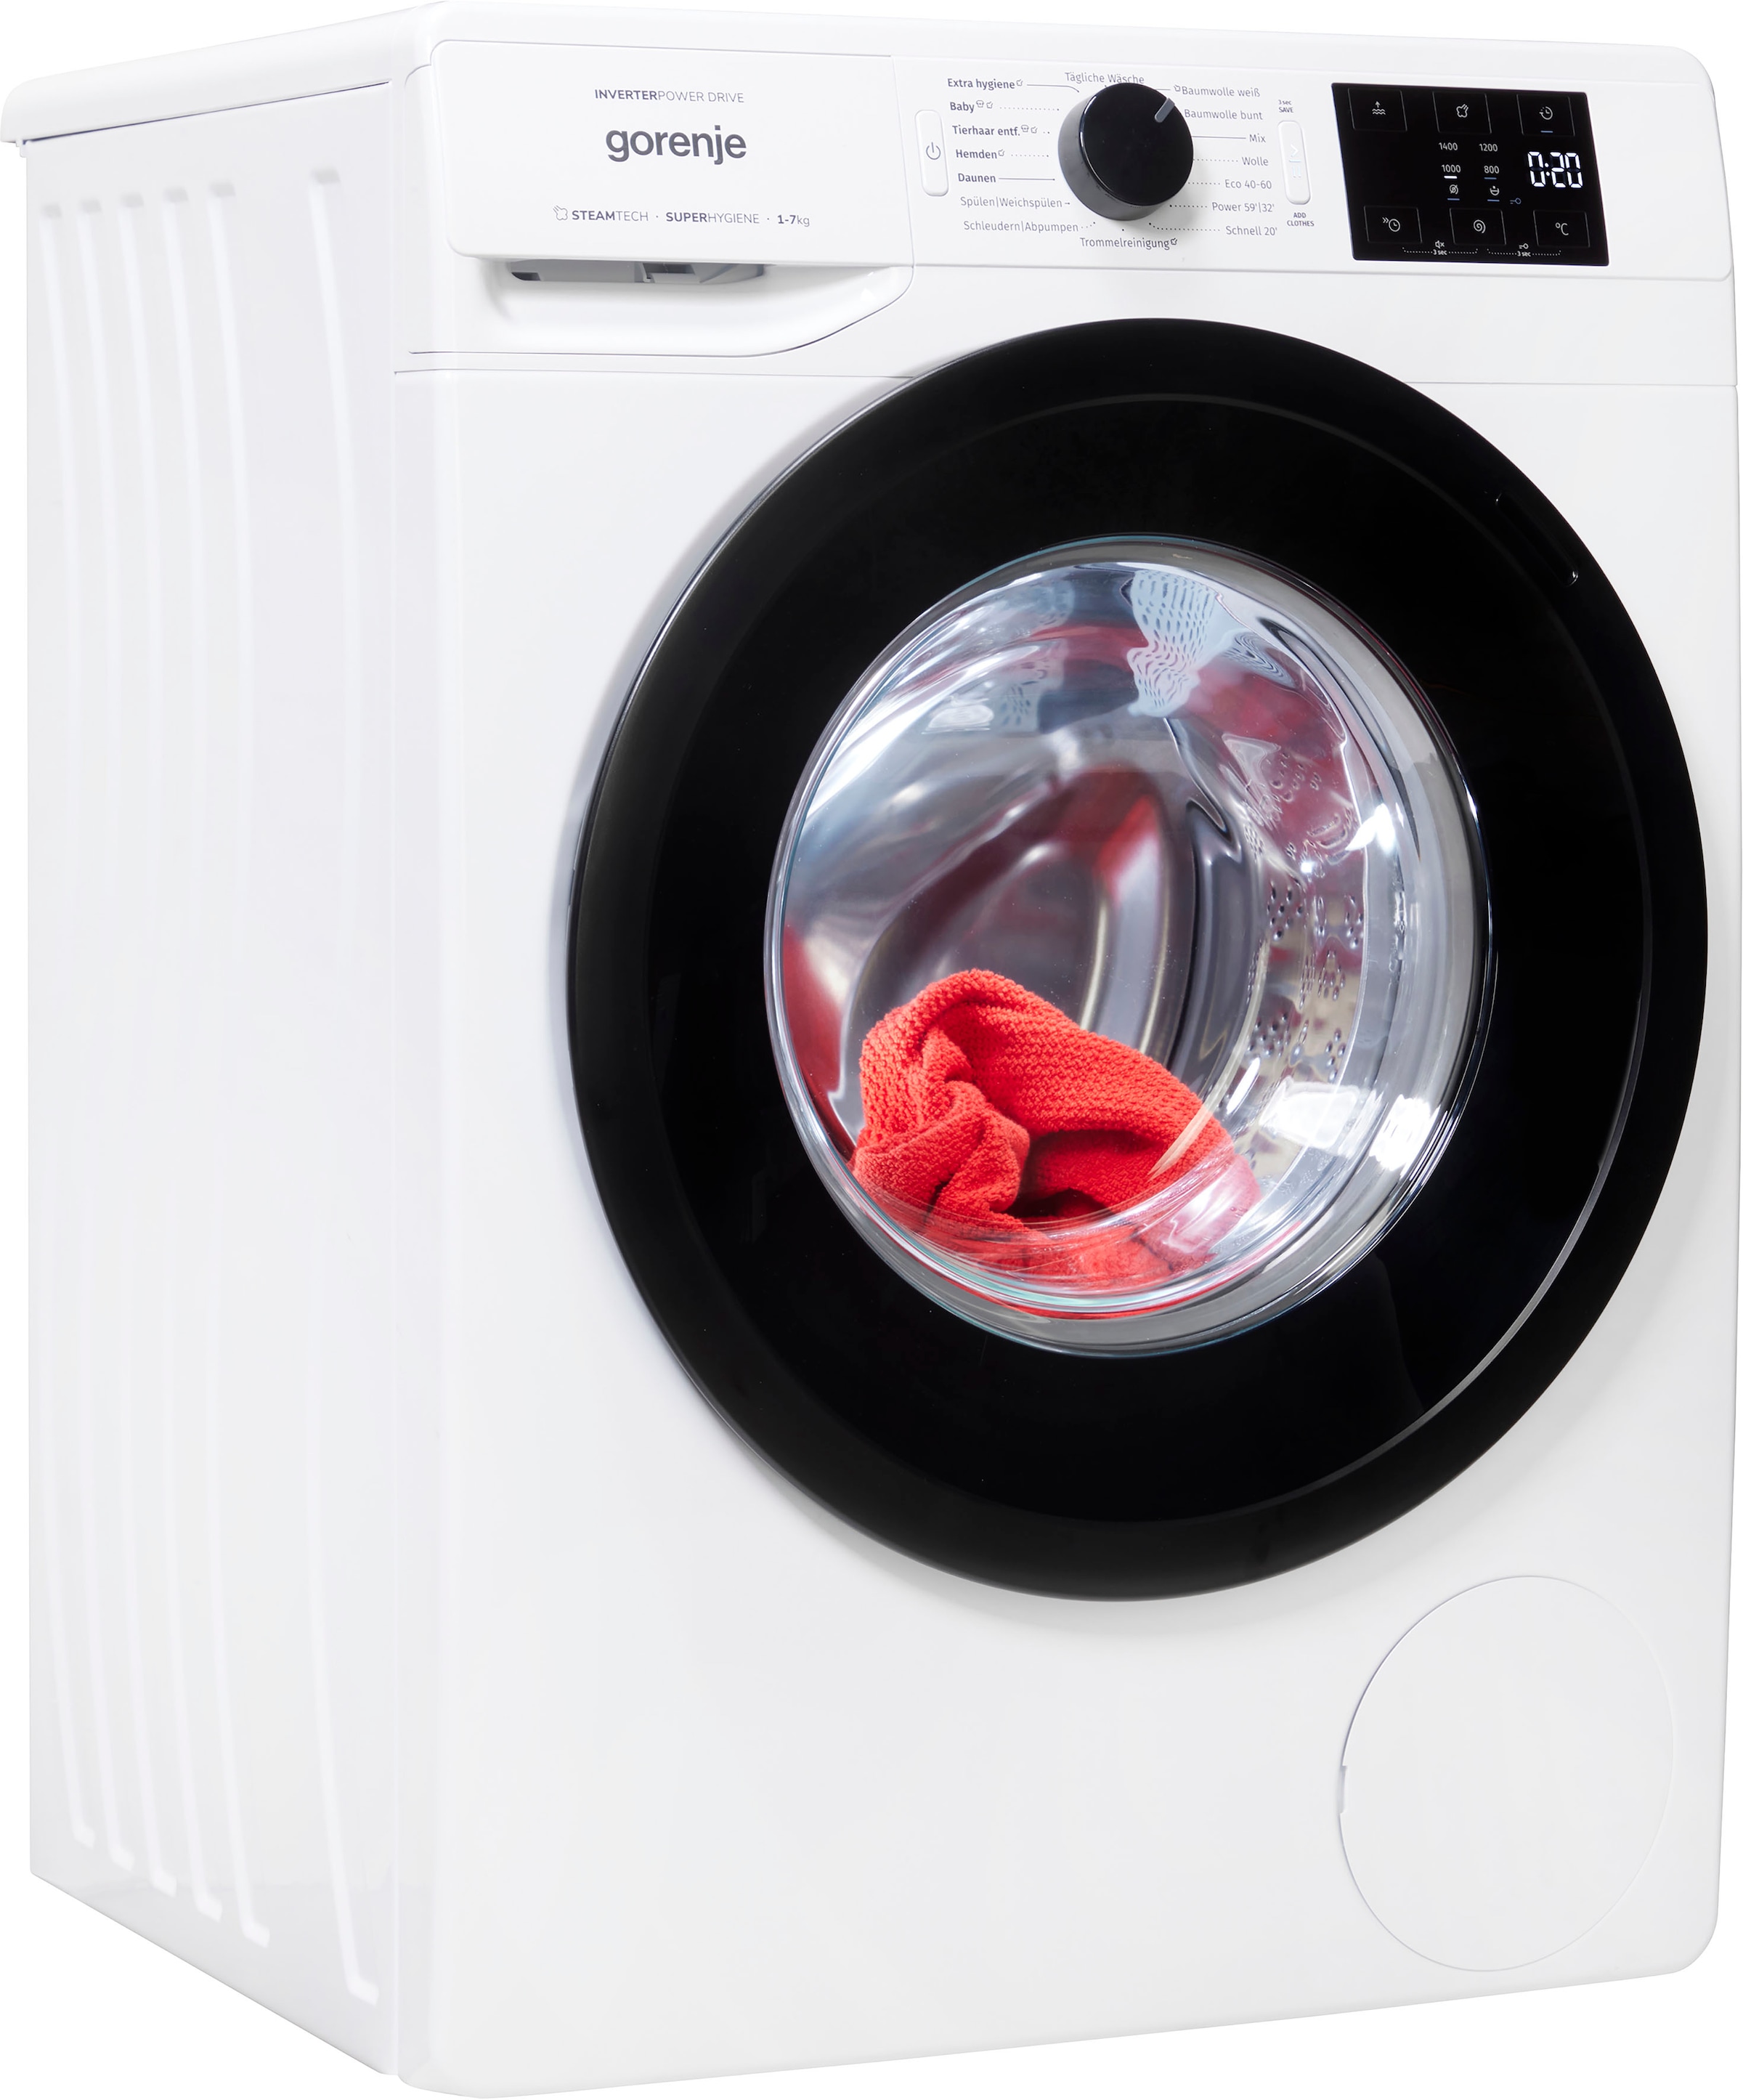 GORENJE Waschmaschine, WNEI74ADPS, 7 kg, 1400 U/min jetzt kaufen bei OTTO